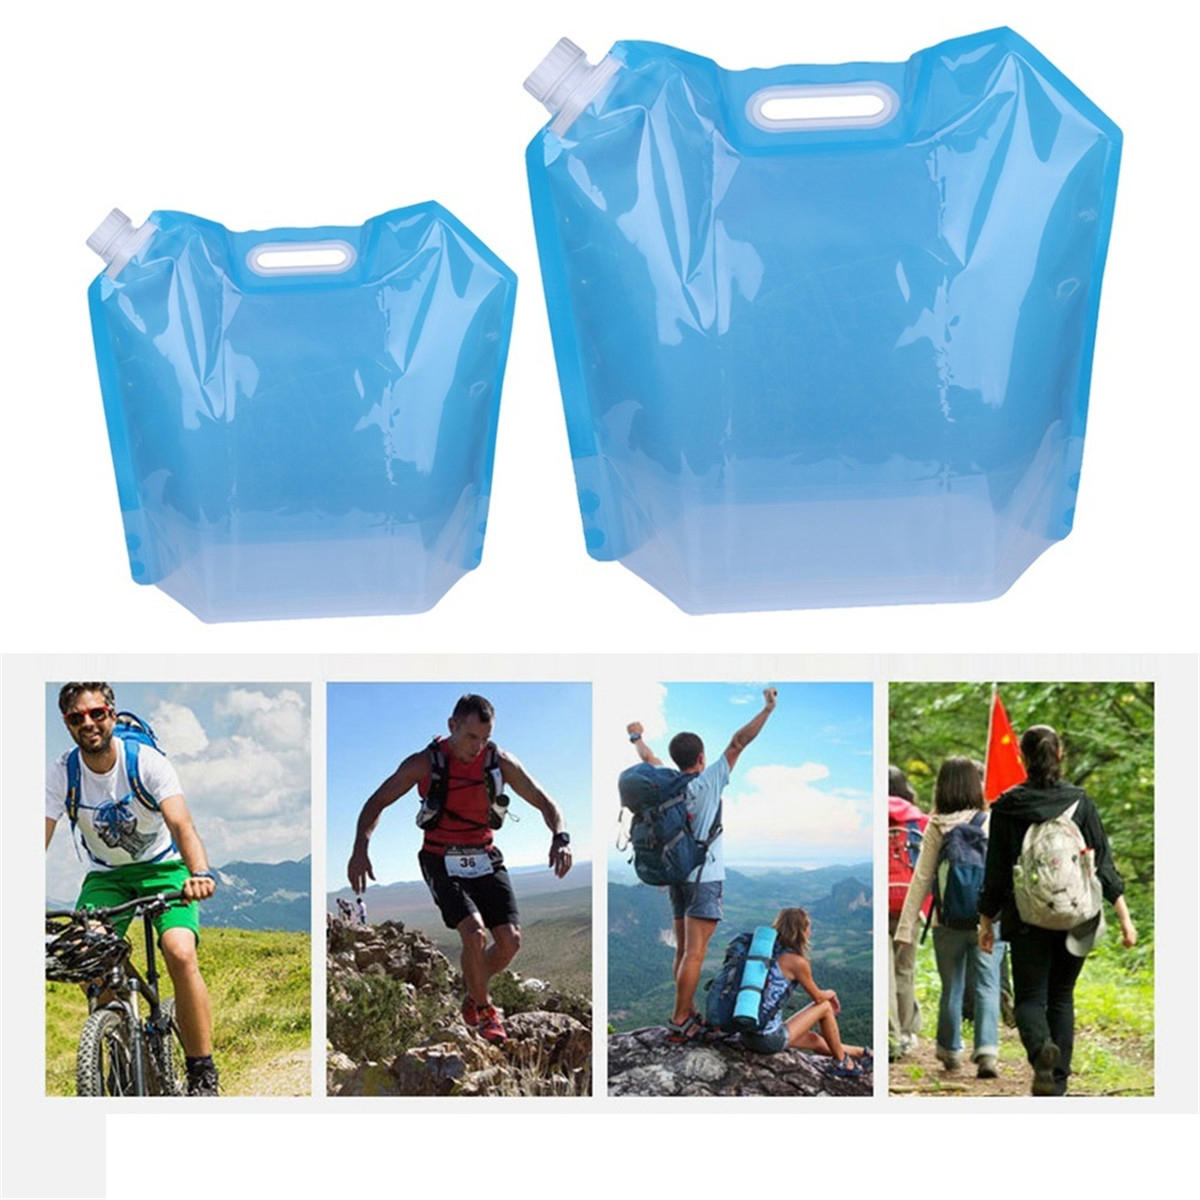 Рюкзак для хранения воды Eco-friendly PVC емкостью 5/10 литров для активного отдыха и путешествий